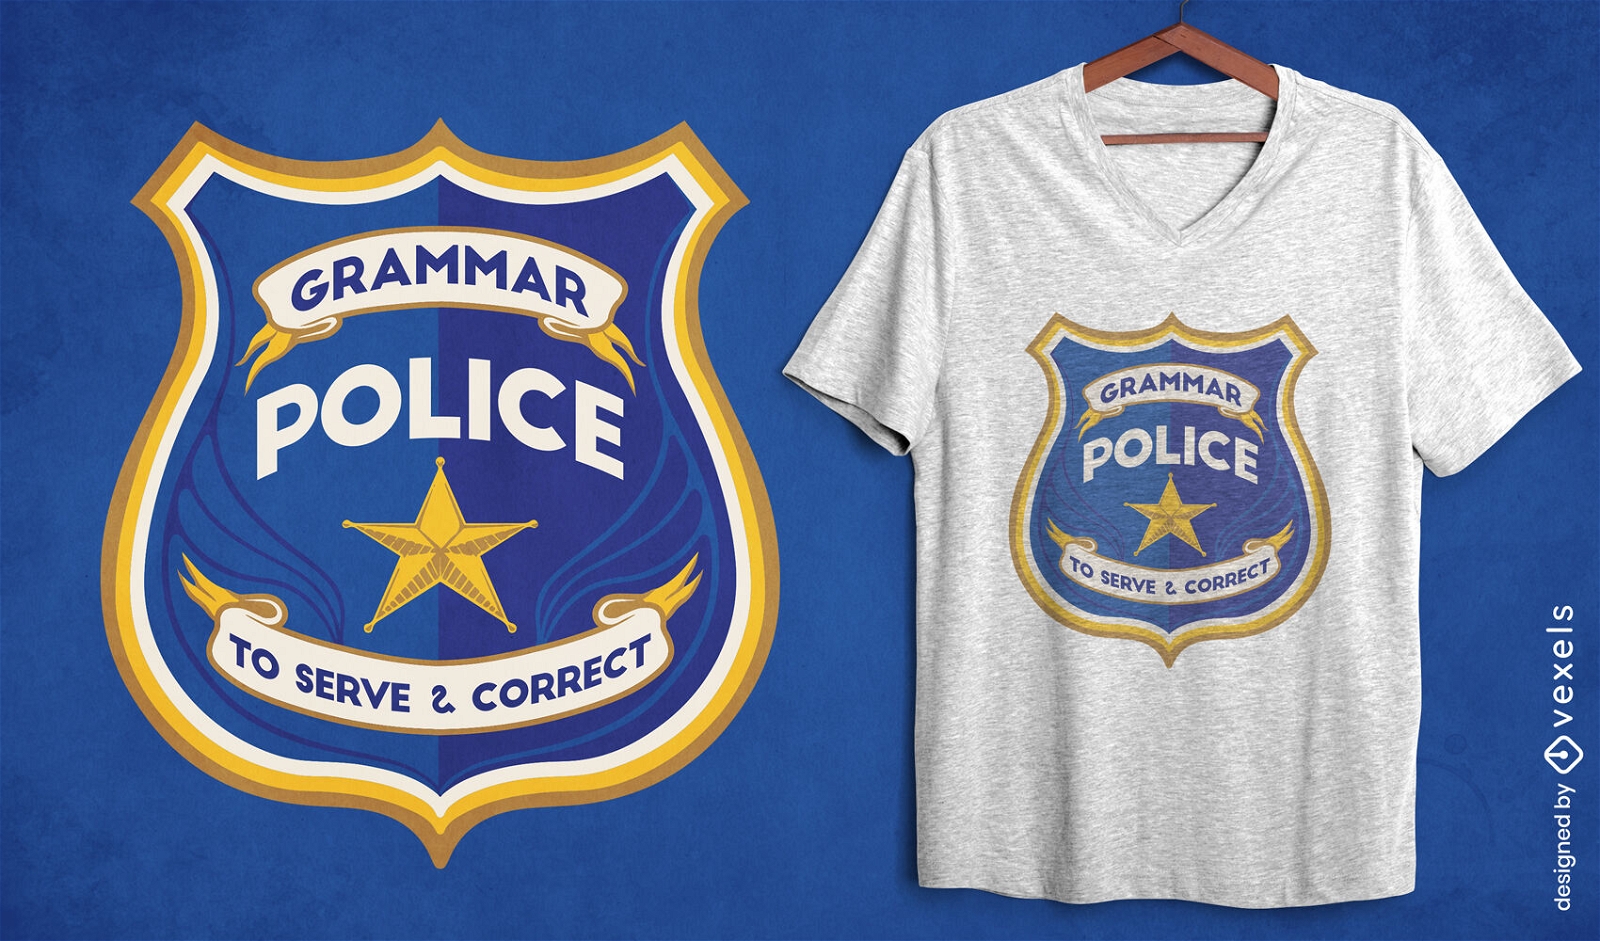 Diseño de camiseta de insignia oficial de policía de gramática